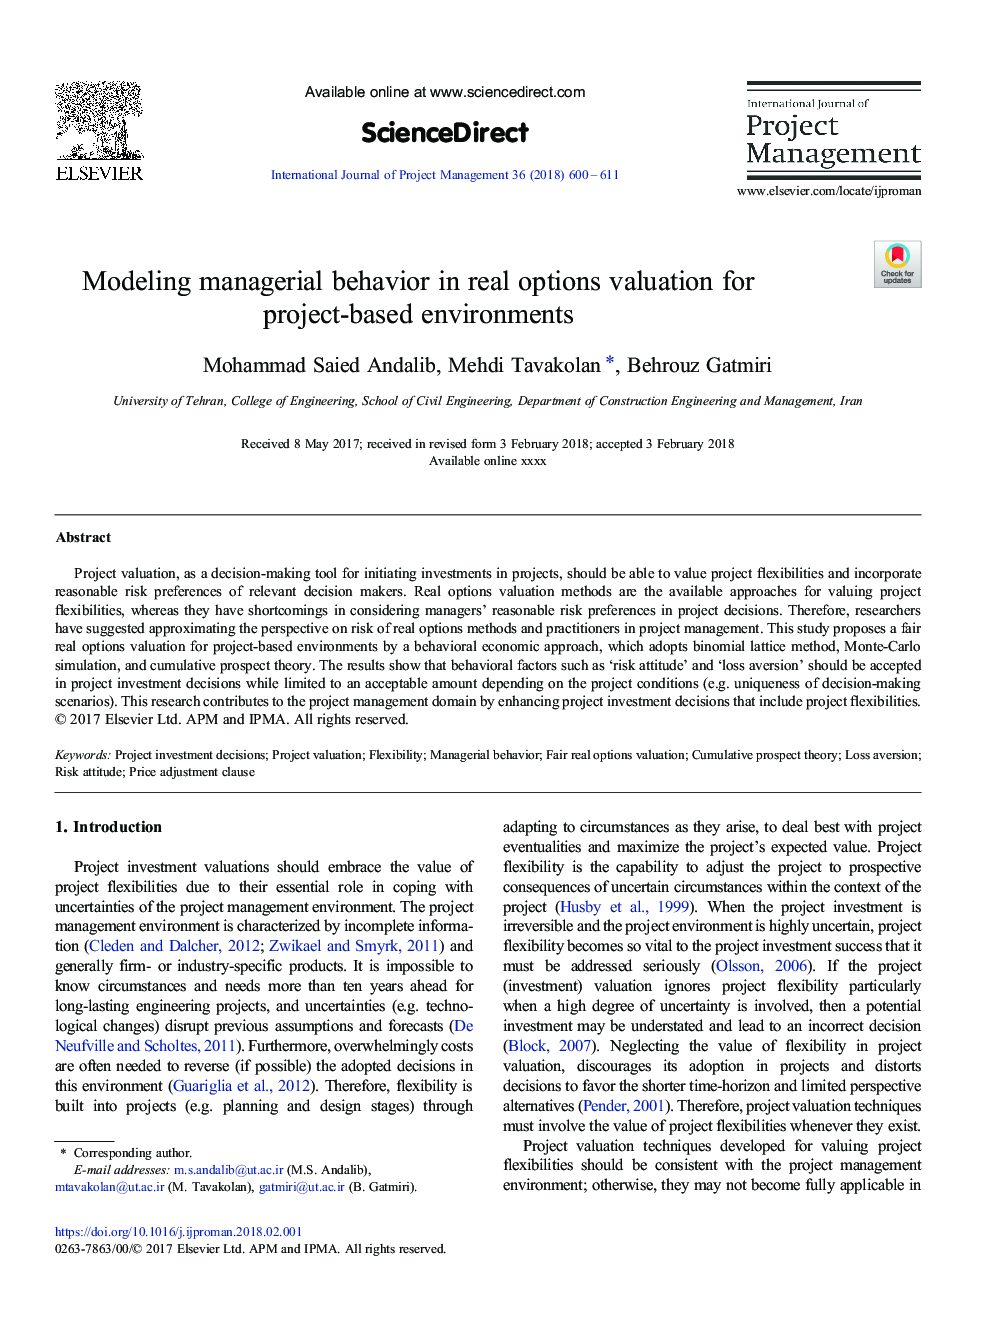 مدل سازی رفتار مدیریتی در ارزیابی گزینه های واقعی برای محیط های مبتنی بر پروژه 